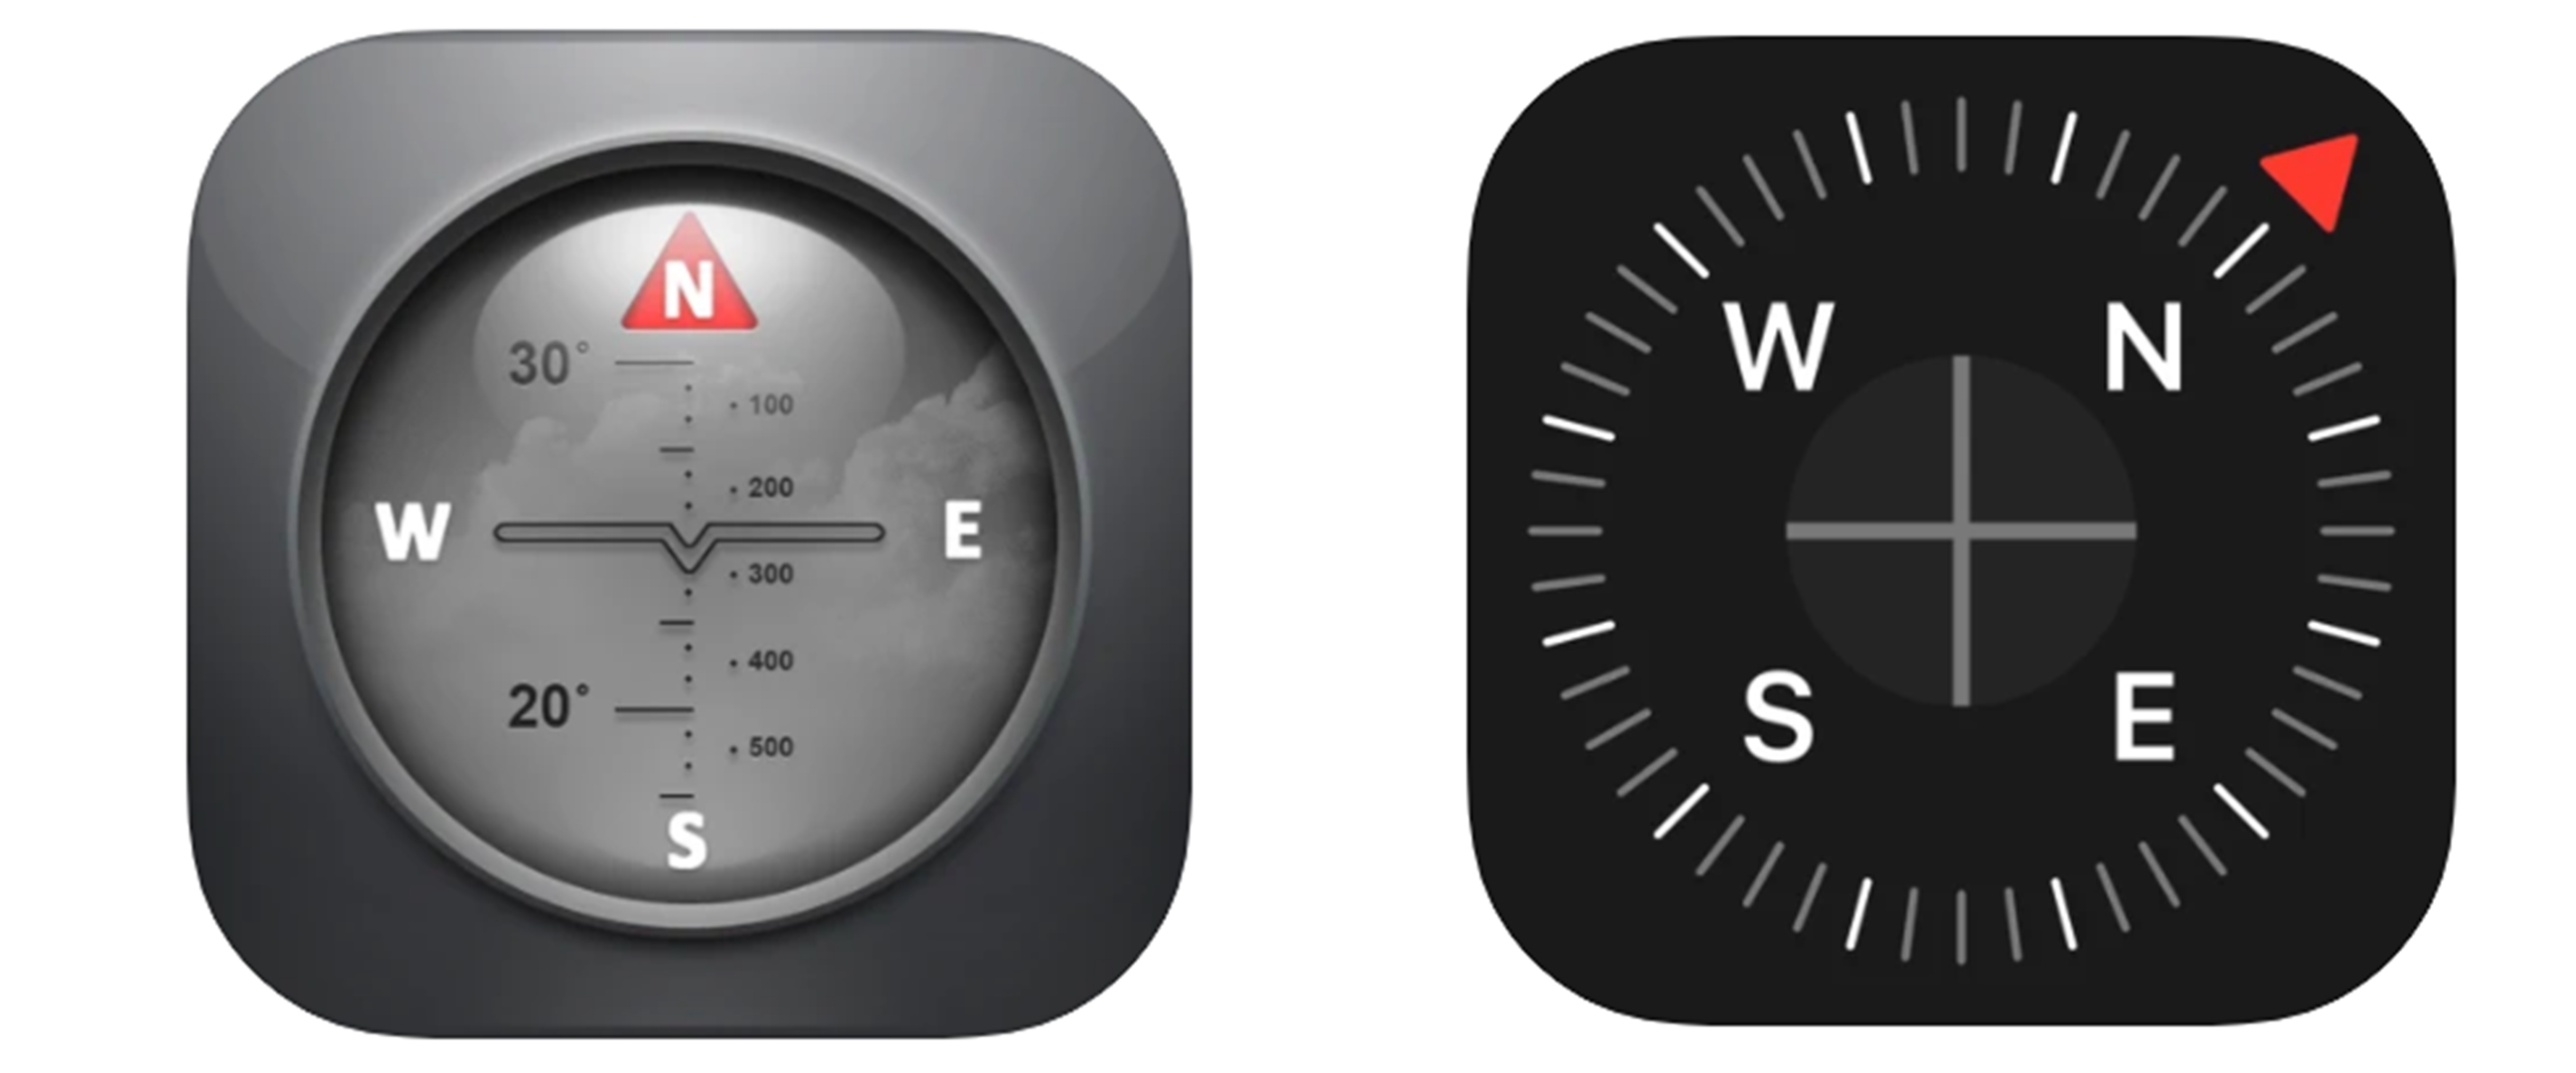 7 Aplikasi kompas akurat untuk iPhone dan iPad, nggak bakal nyasar